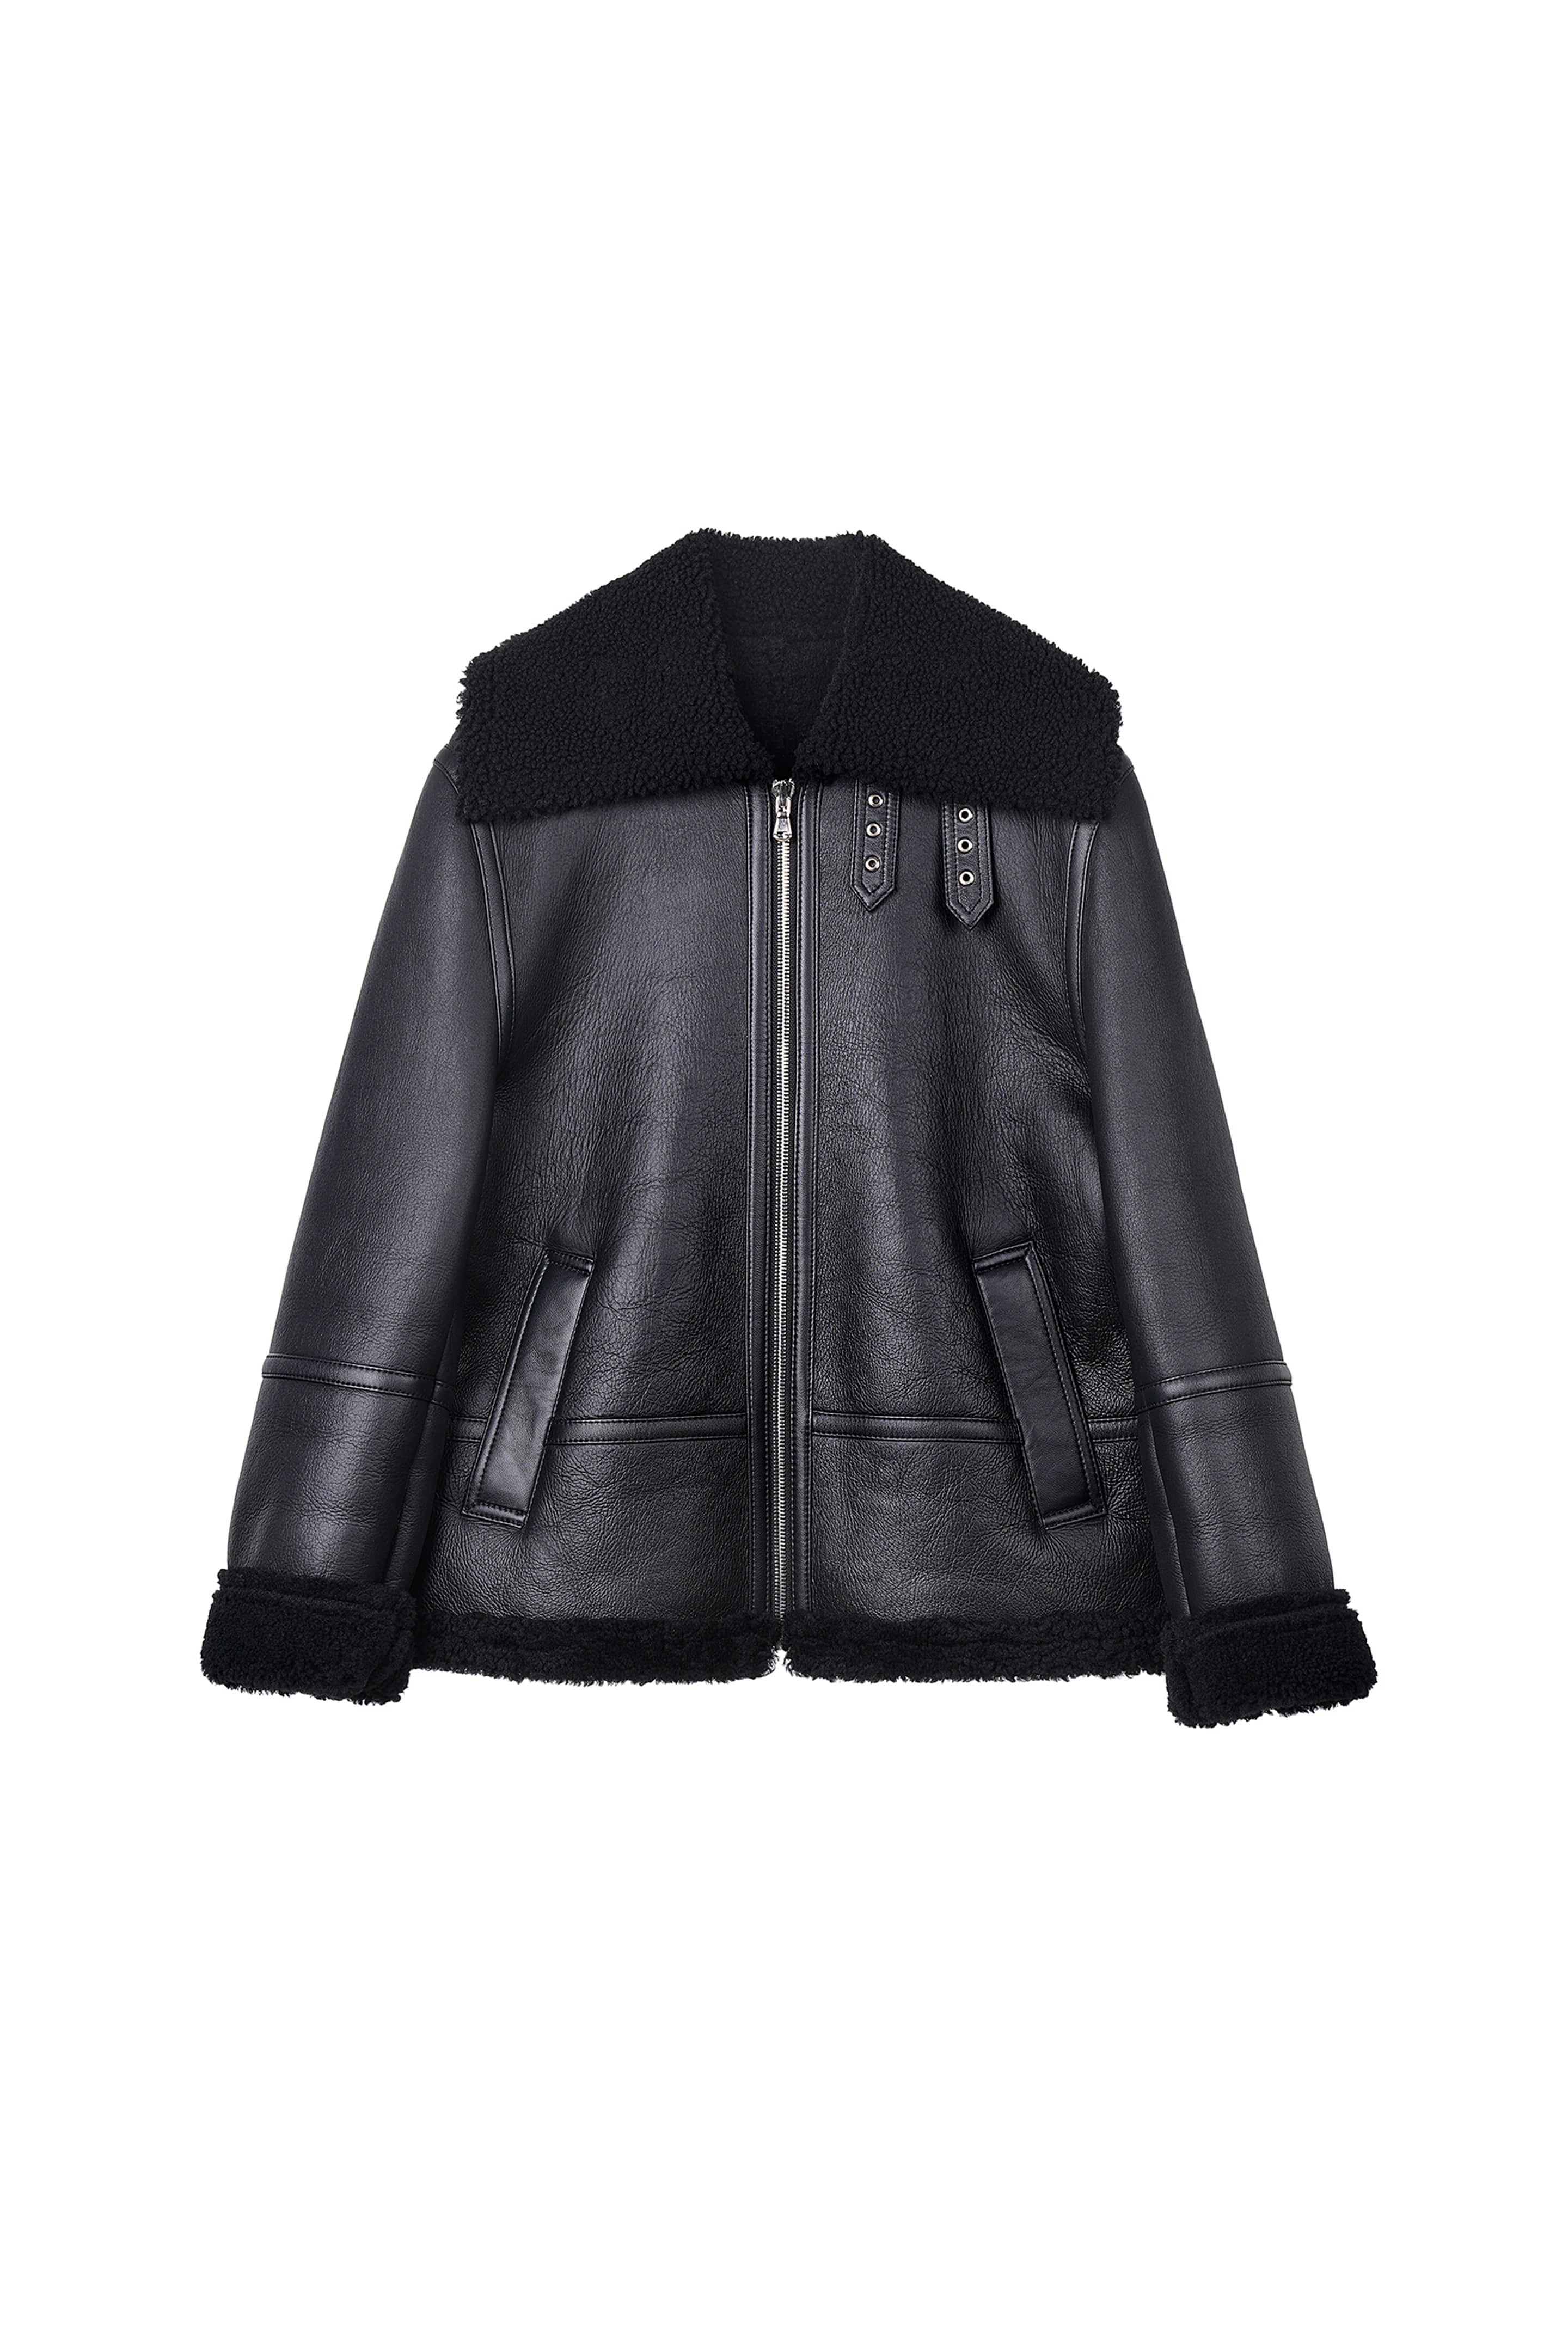 Black Leather shearing Jacket